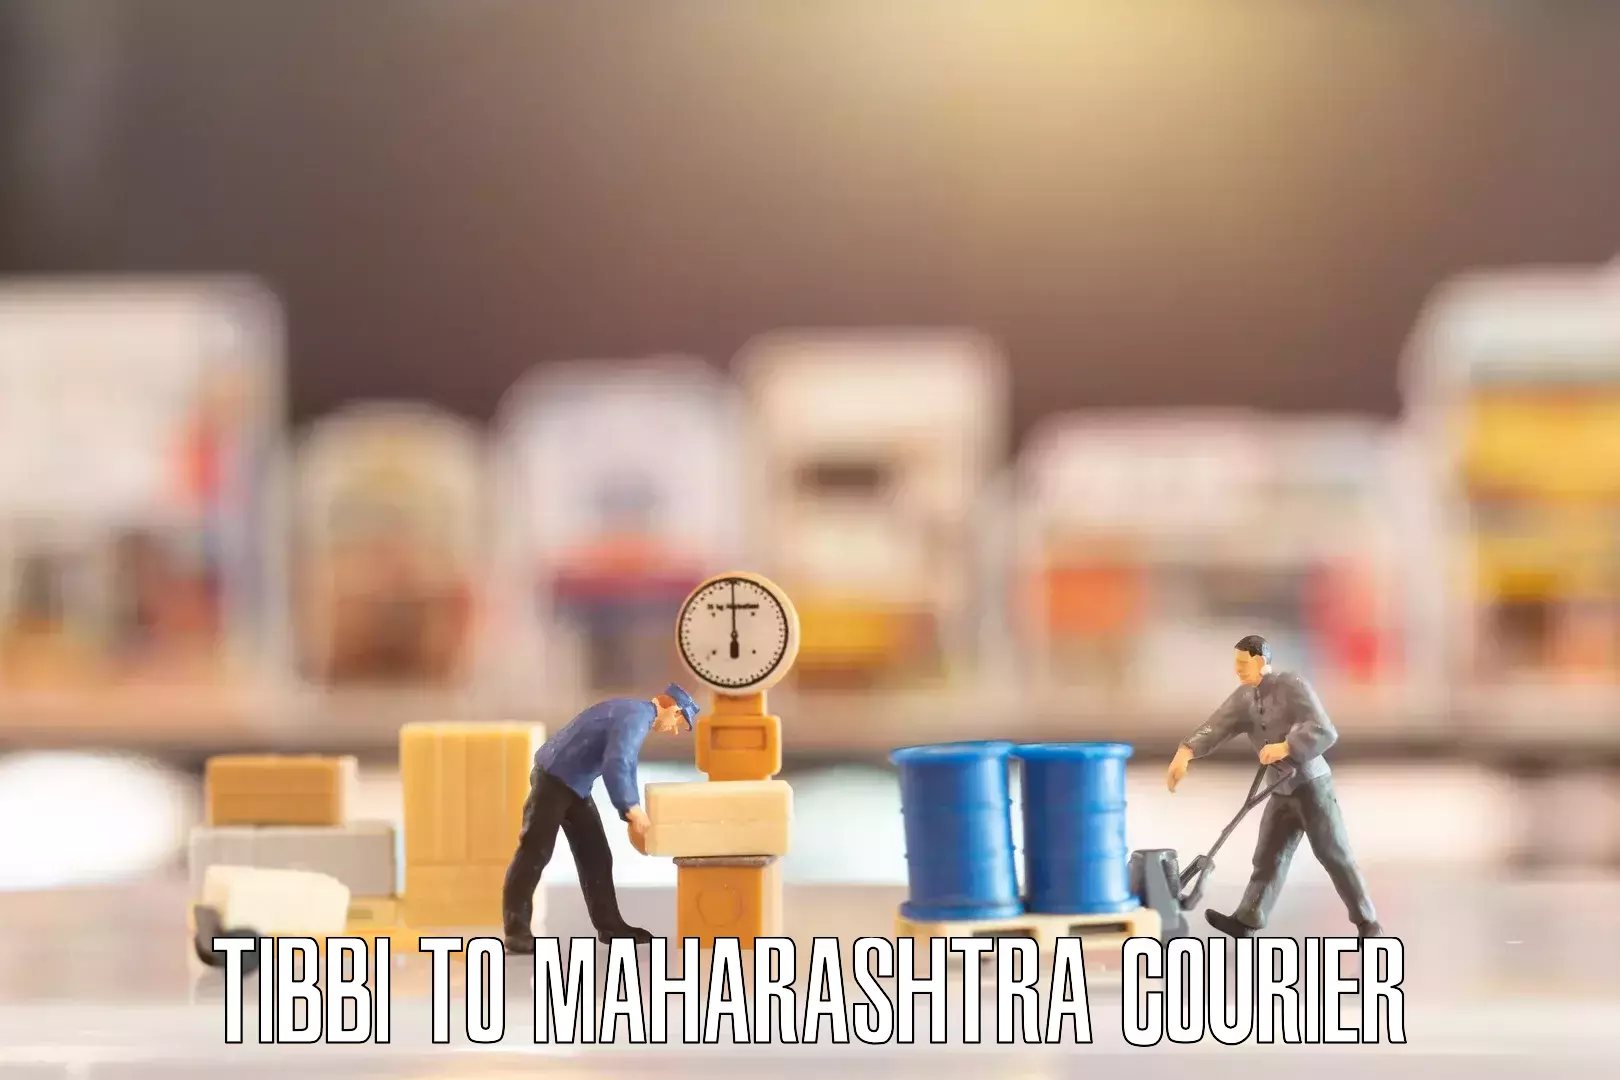 Furniture transport experts Tibbi to Maharashtra